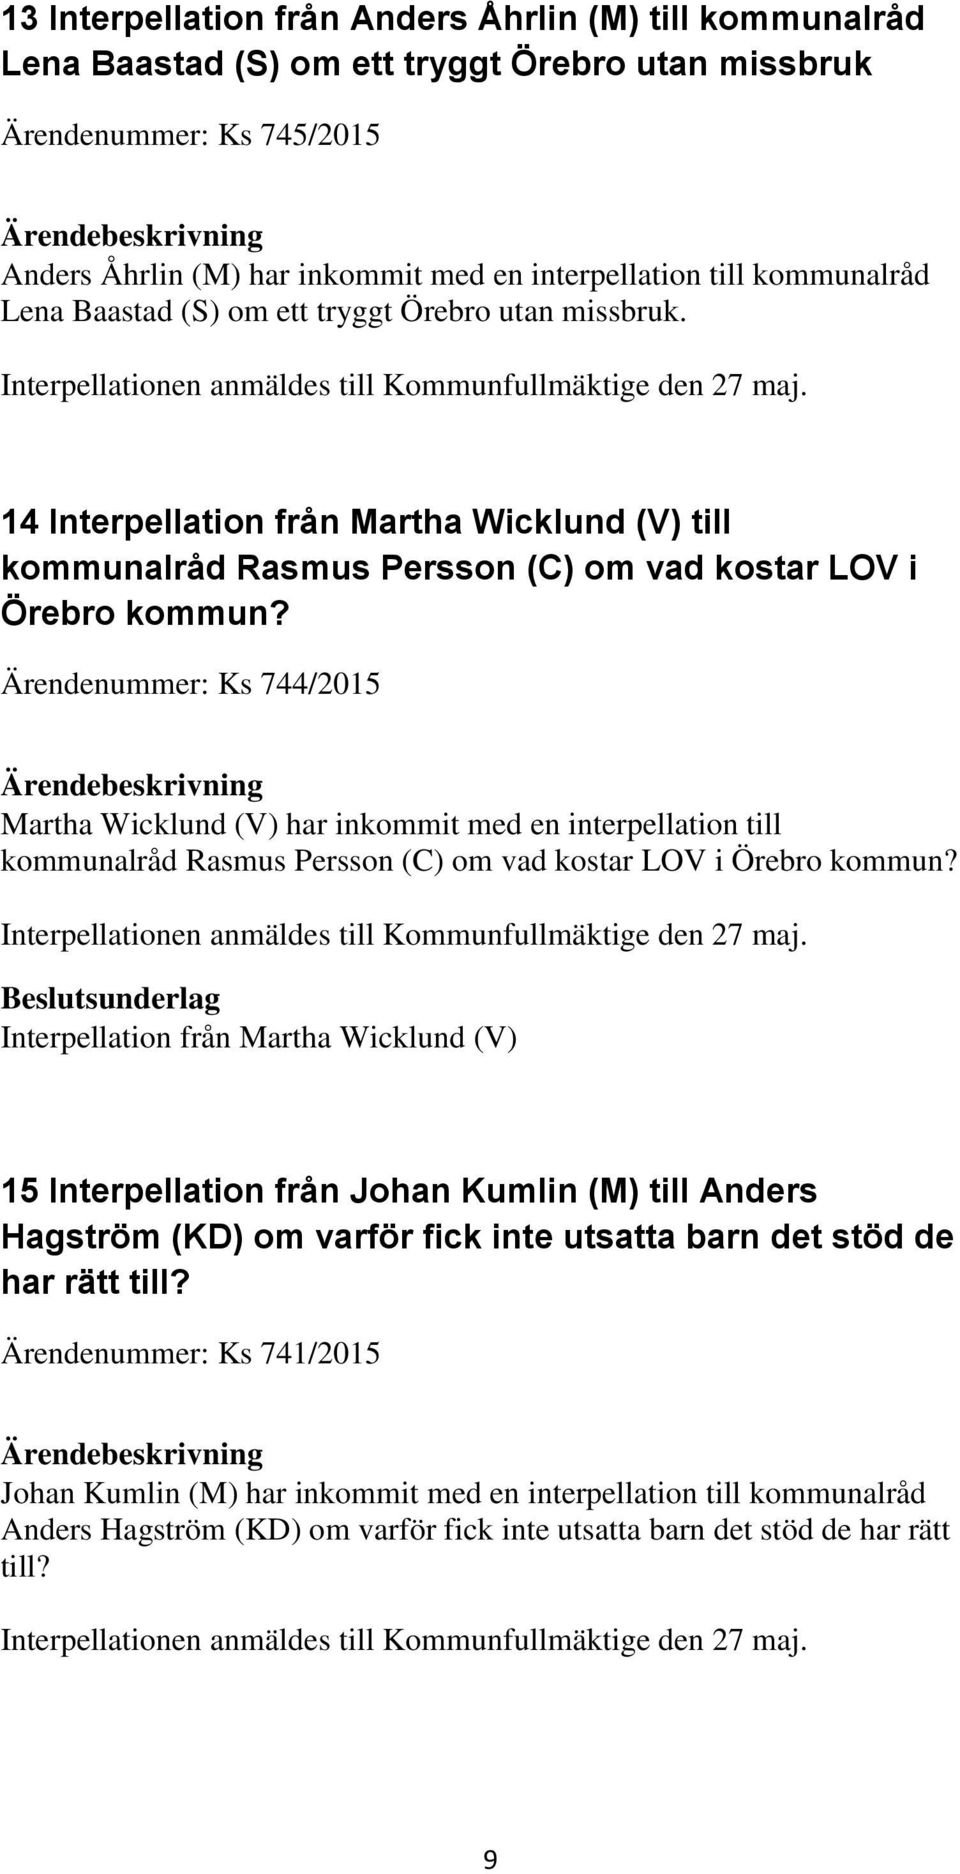 14 Interpellation från Martha Wicklund (V) till kommunalråd Rasmus Persson (C) om vad kostar LOV i Örebro kommun?